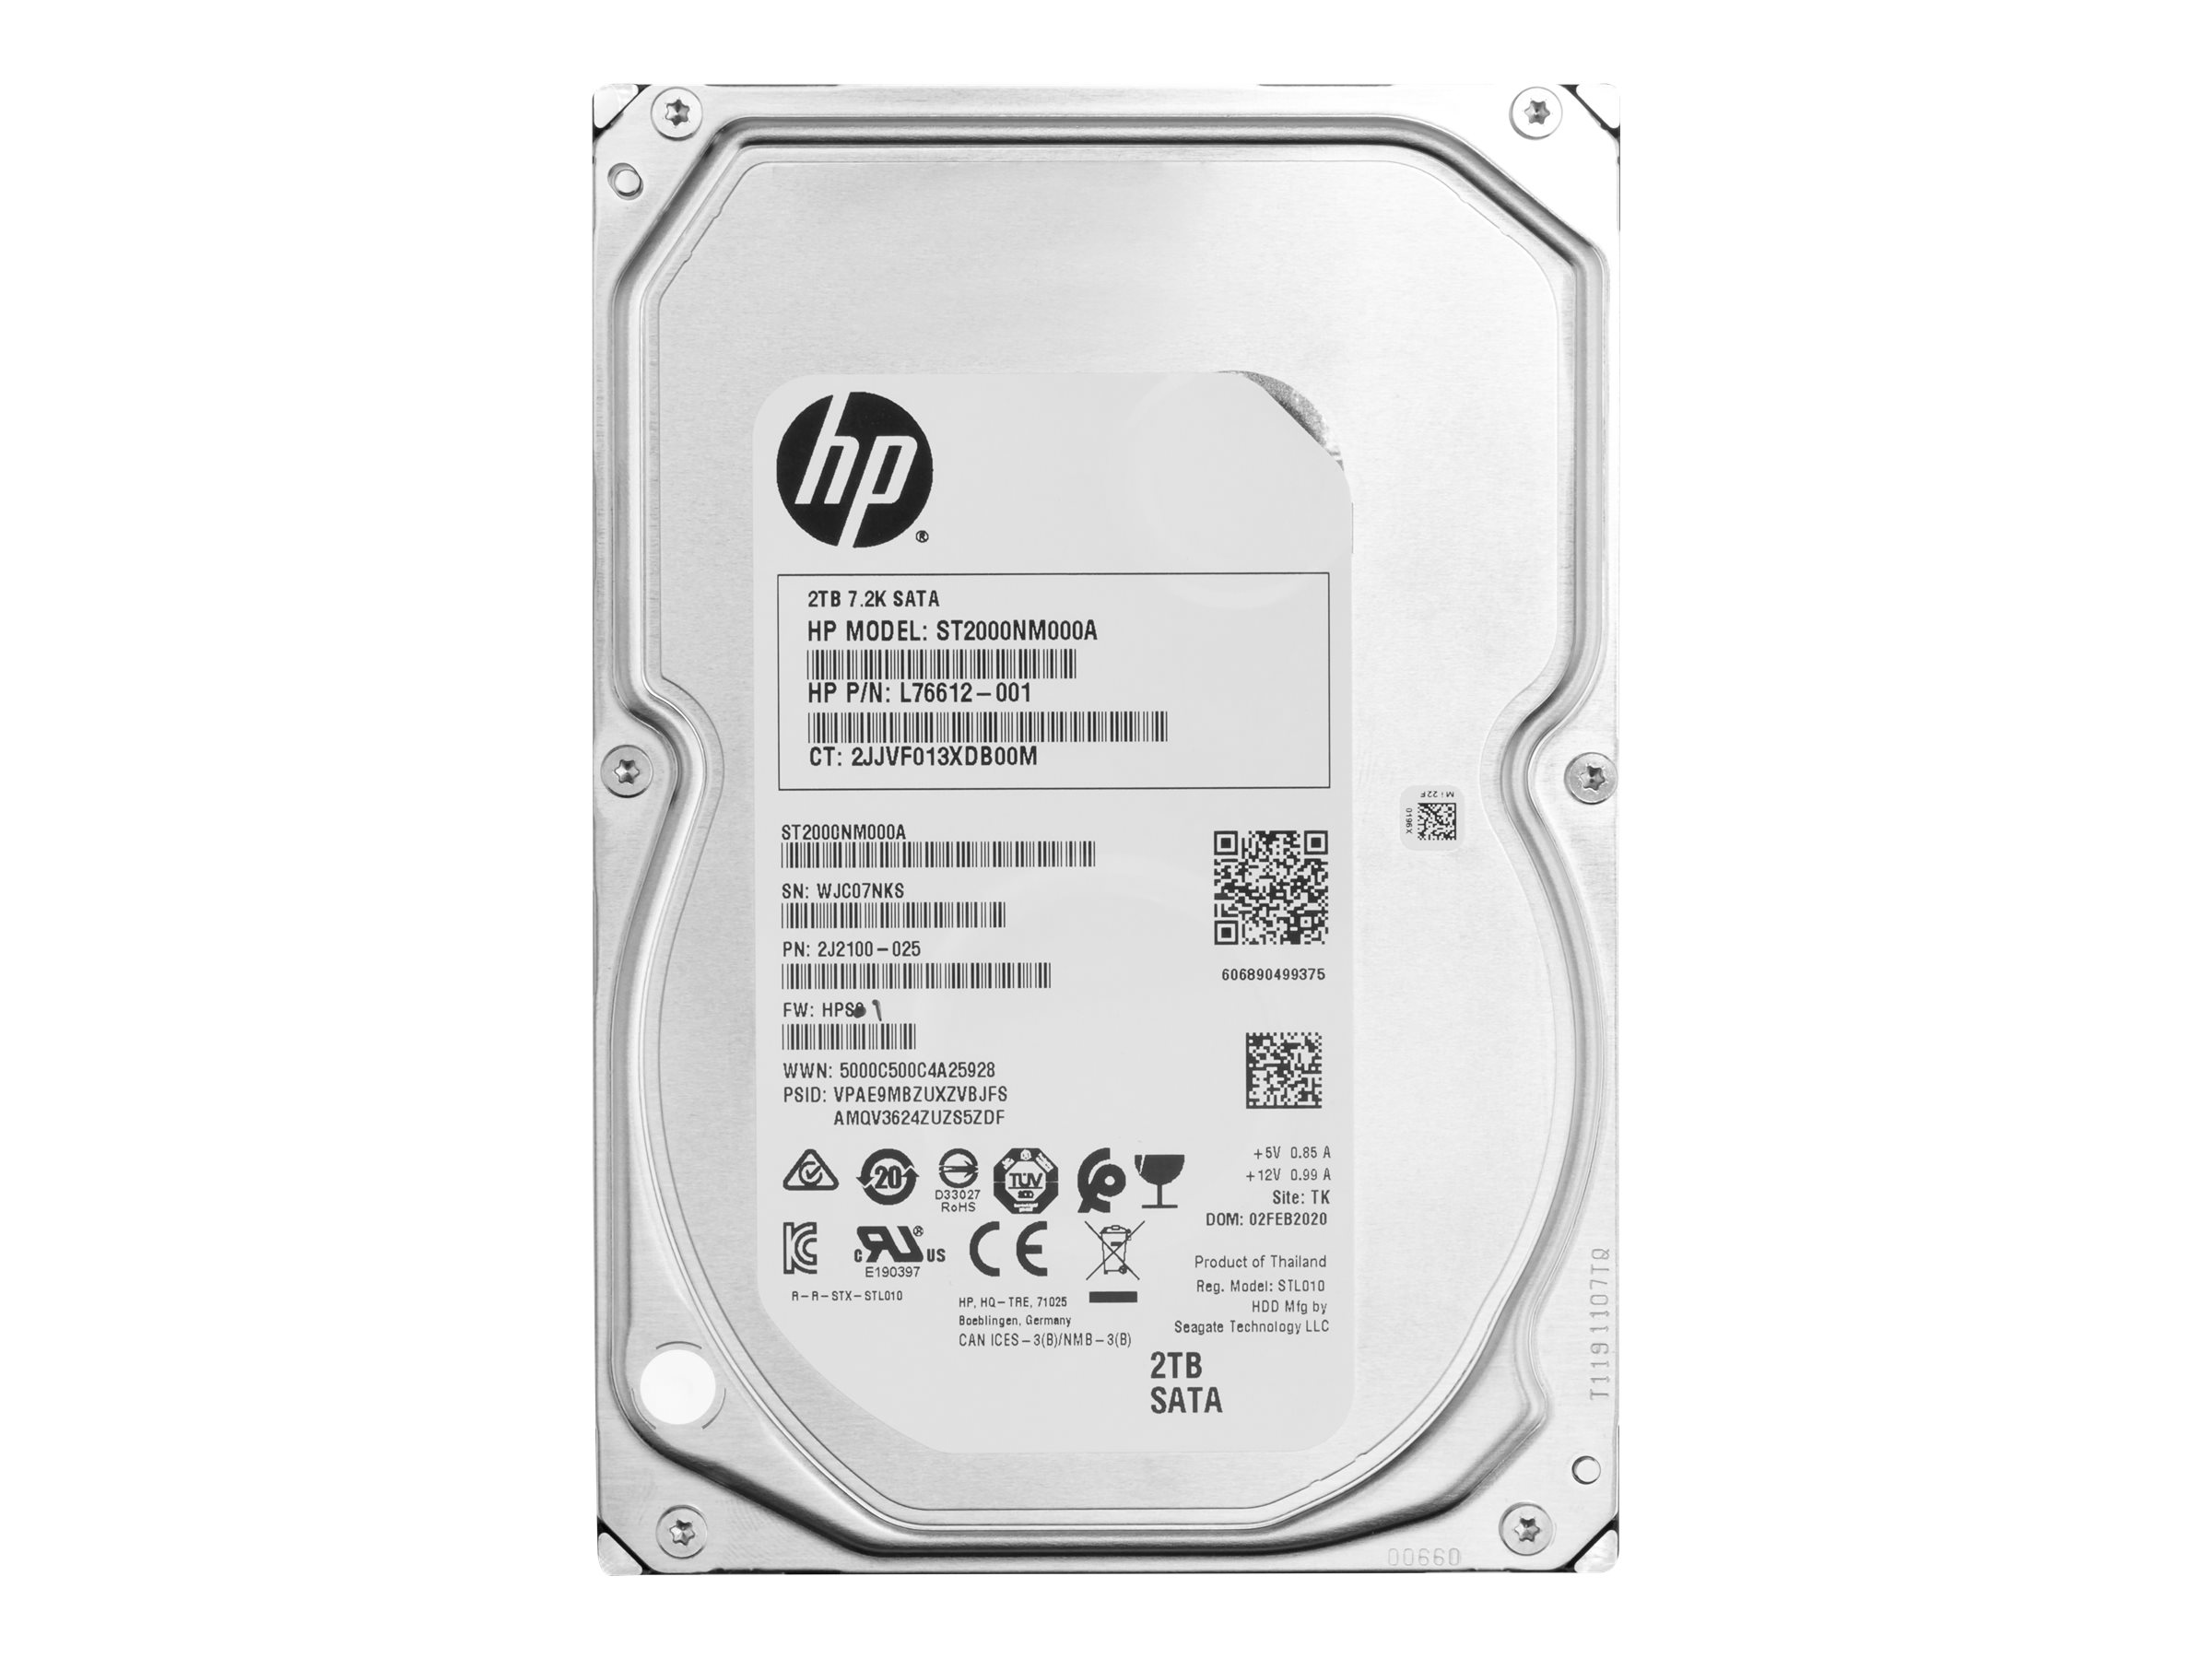 HP 2TB 7200RPM SATA 8,89cm Enterprise (2Z274AA)